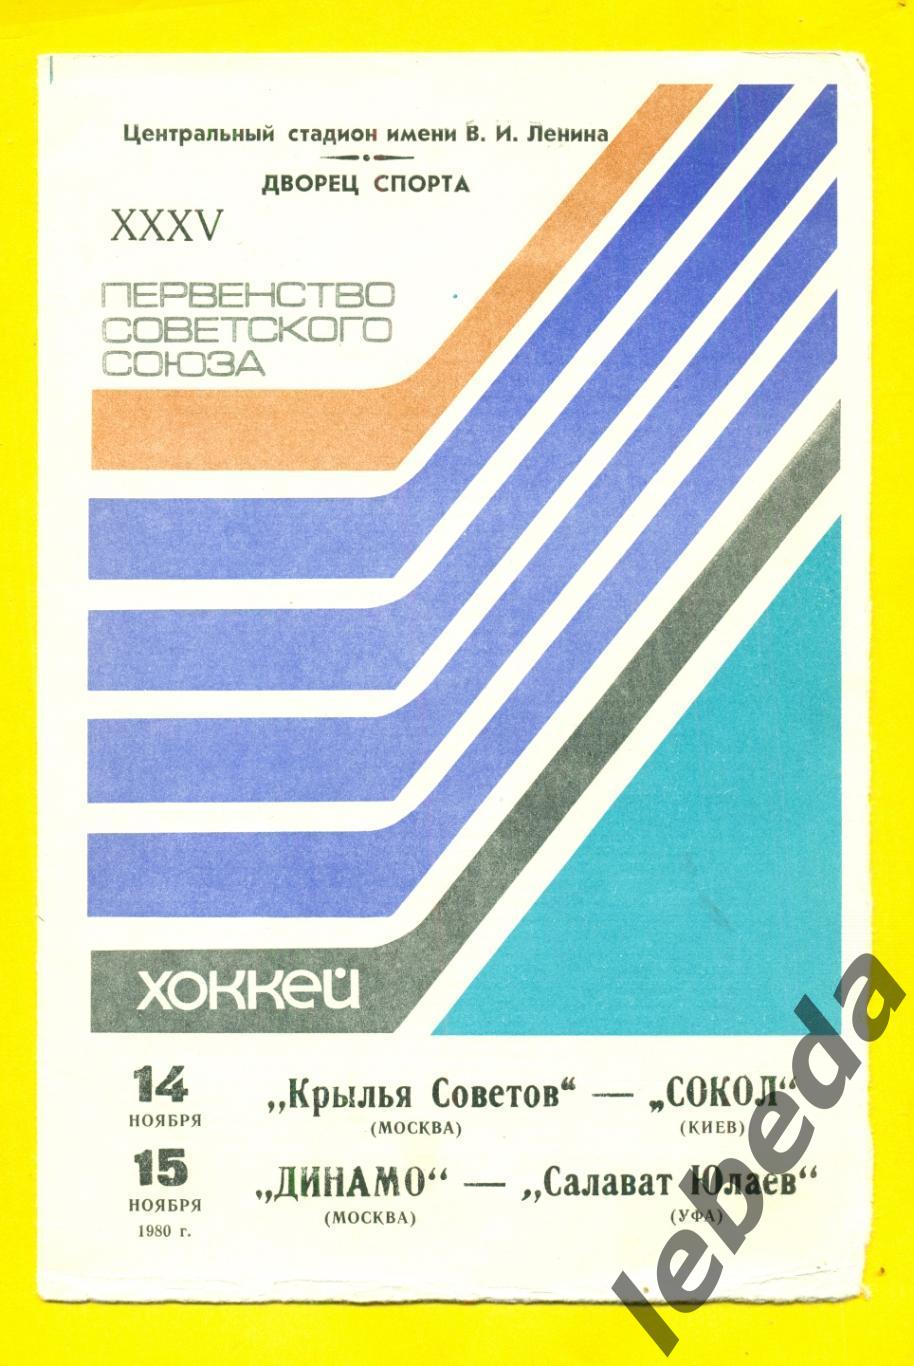 Крылья Советов М. - Сокол Киев / Динамо Москва - Салават Юлаев Уфа - 1980 / 1981